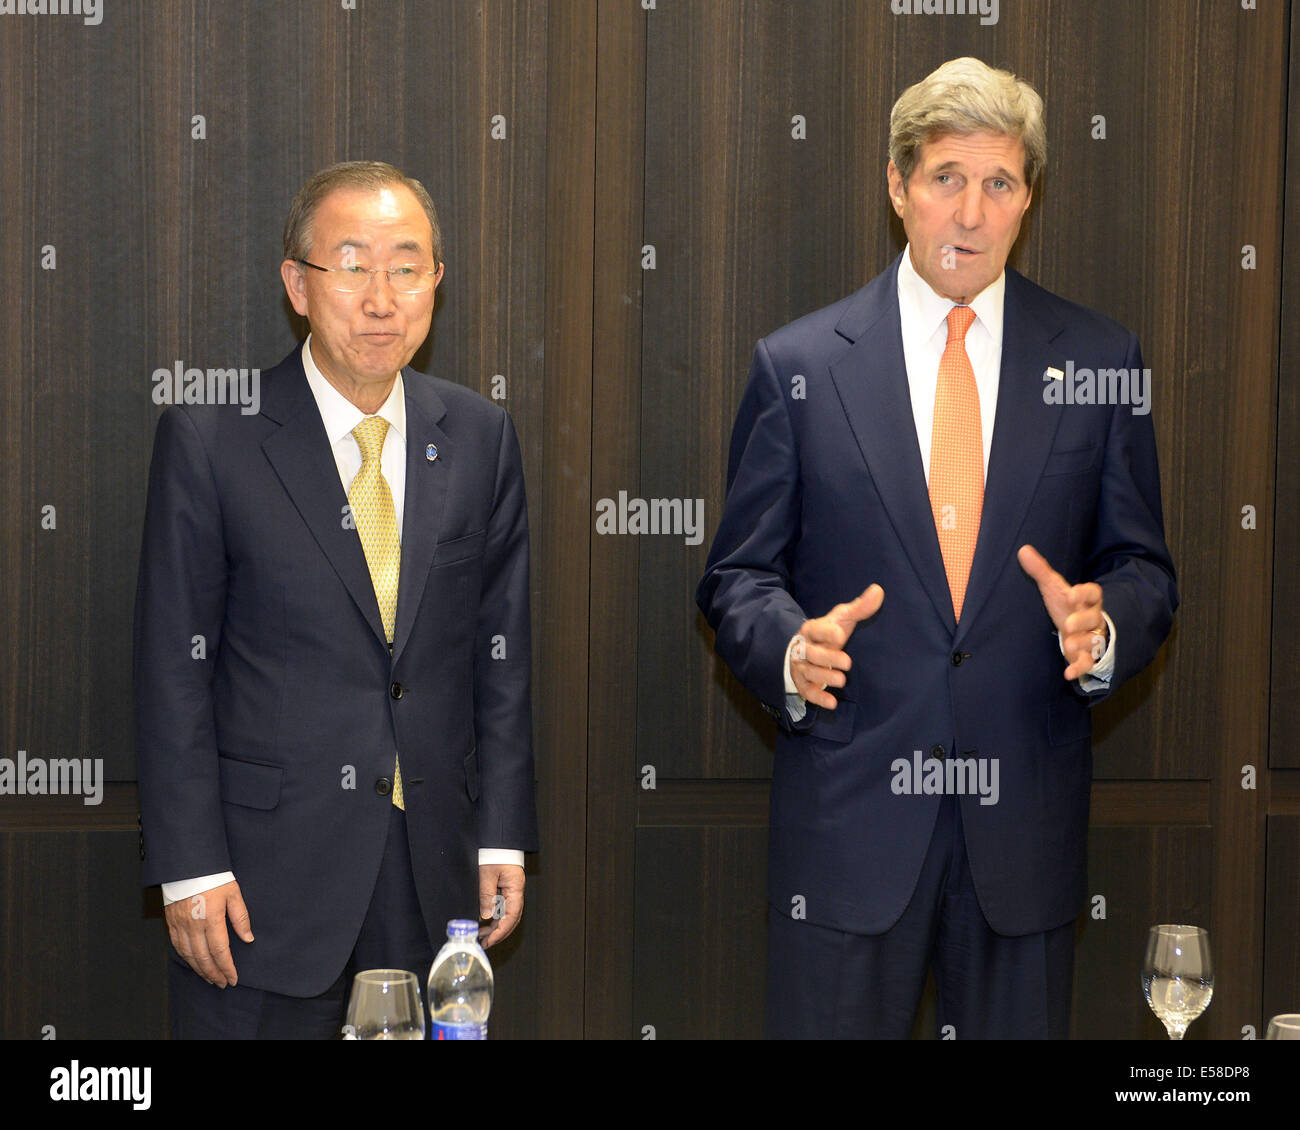 Jérusalem, Jérusalem. 23 juillet, 2014. Le secrétaire d'Etat John Kerry (R) rencontre avec le Secrétaire général des Nations Unies Ban Ki-moon, à l'David Citadel Hotel, Jérusalem, le 23 juillet 2014. John Kerry est arrivé en Israël mercredi pour stimuler les efforts en vue de parvenir à un accord de cessez-le-feu entre Israël et le Hamas, un fonctionnaire de l'ambassade américaine à Tel Aviv a dit à Xinhua. Credit : Ambassade des États-Unis pour Israël/Matty Stern/Xinhua/Alamy Live News Banque D'Images